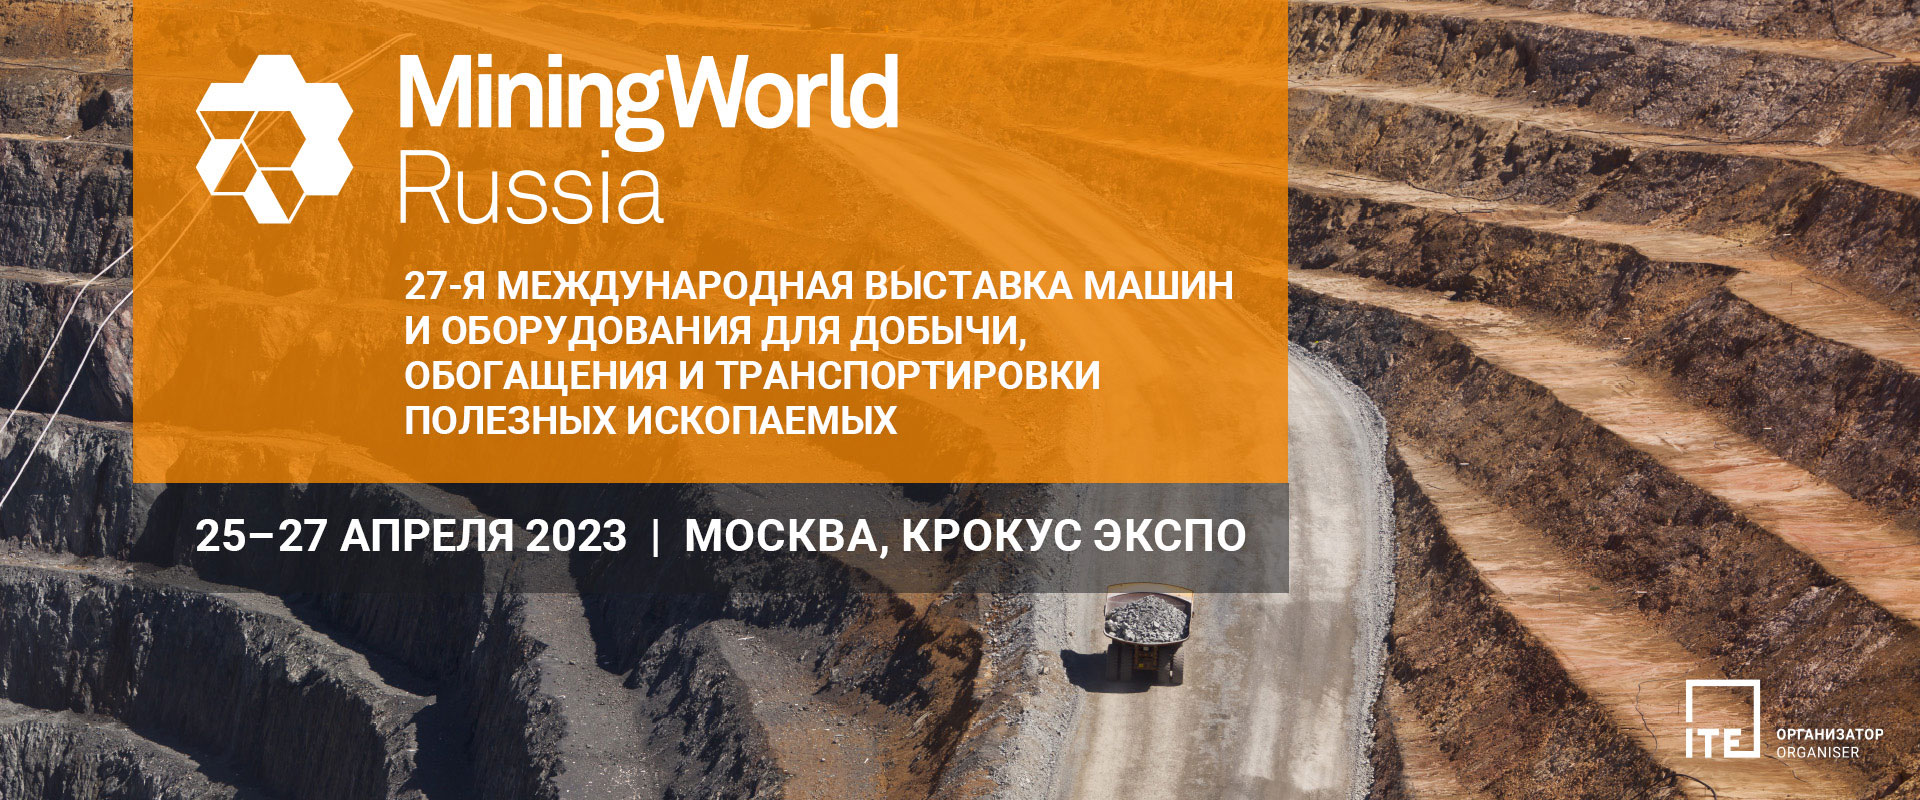 miningworld-russia-2023